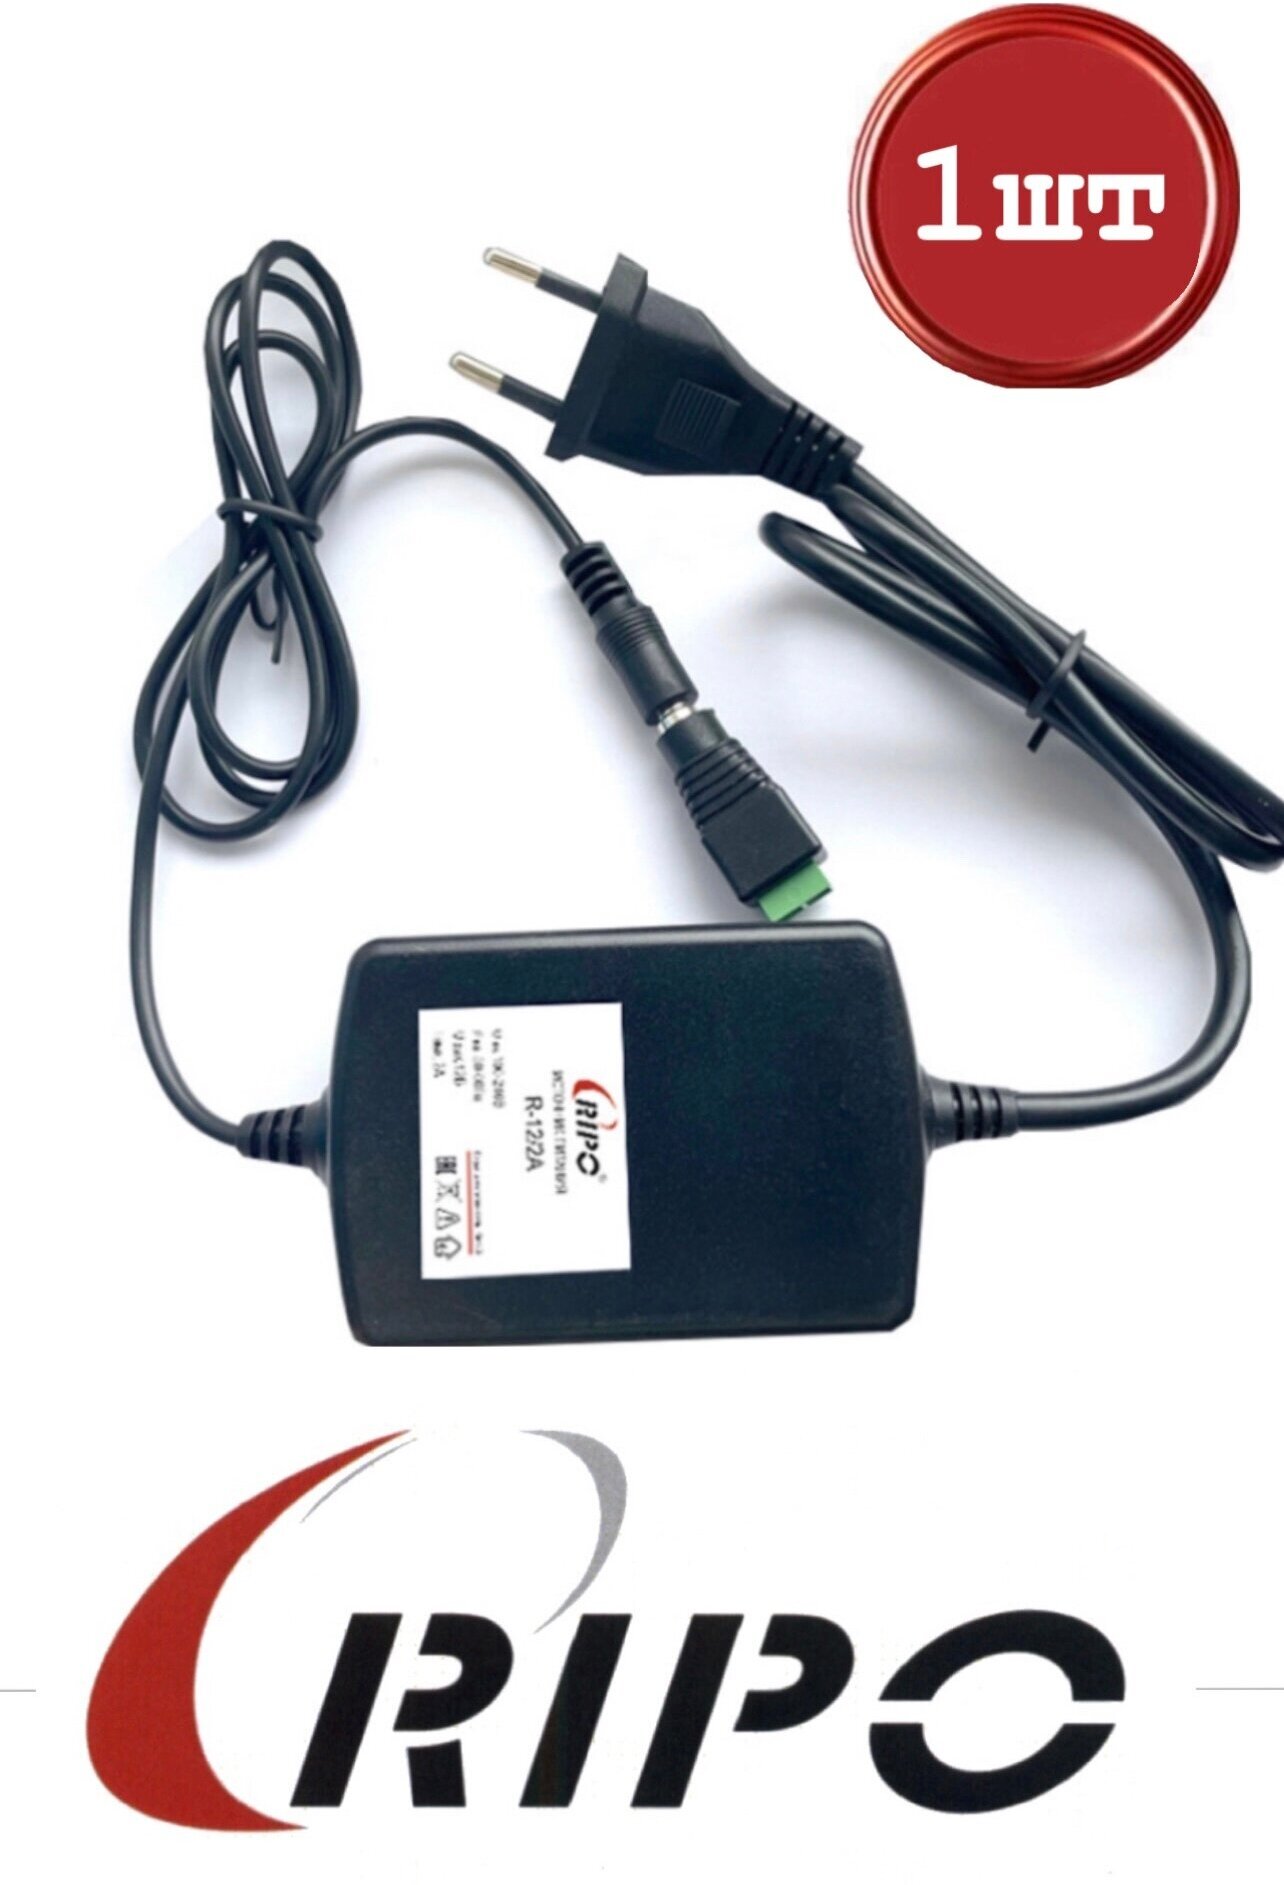 Зарядное устройство для камер видеонаблюдения, контроллеров, светодиодных лент сетевое блок питания универсальный импульсный RIPO 12 В, 2А Вх. напряжение сети 100-240V, 50-60Гц ибп 011-600178